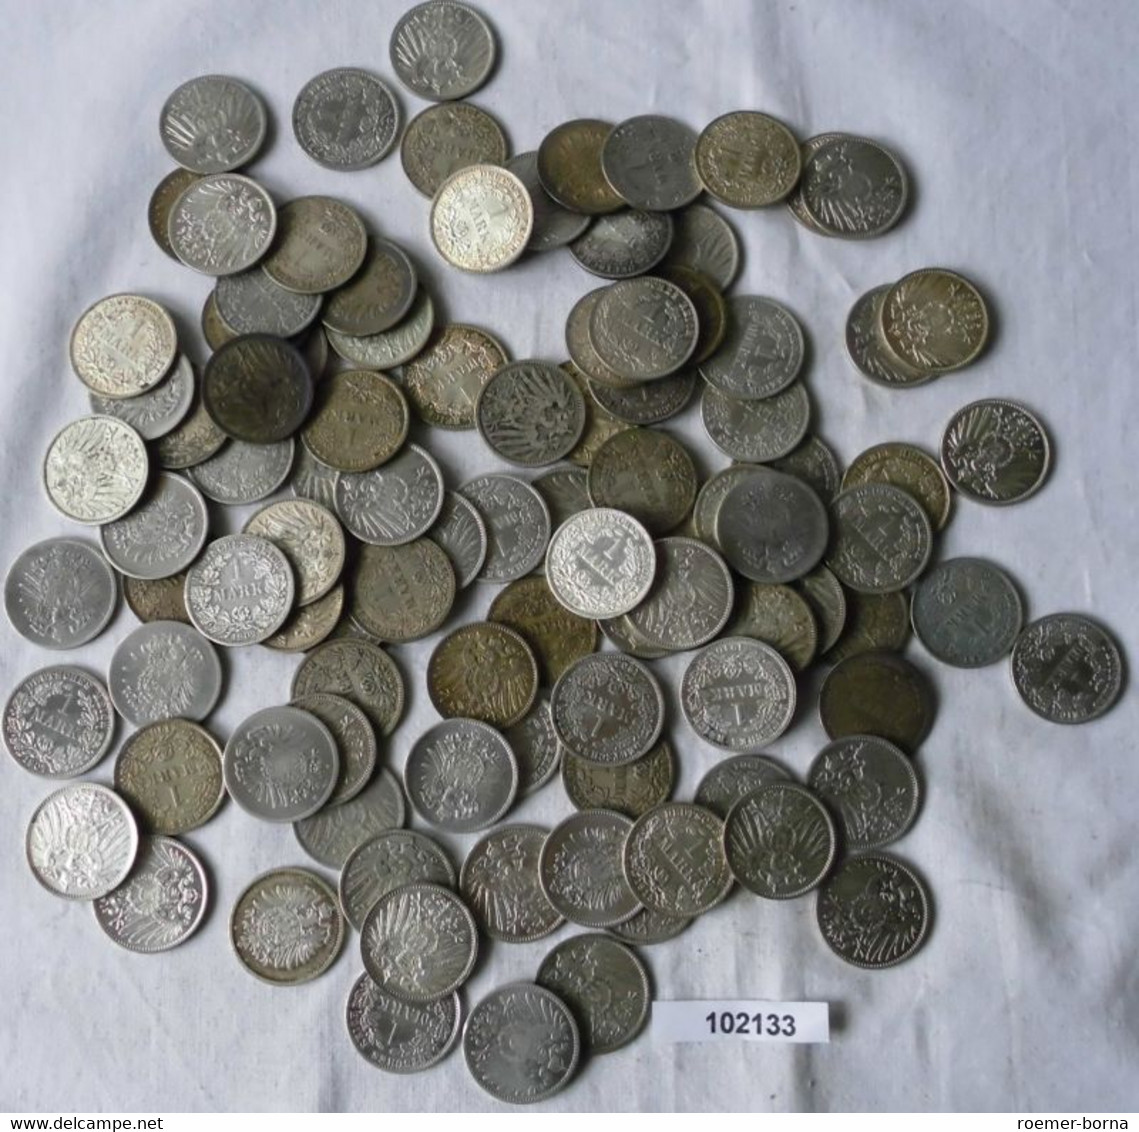 Seltene Sammlung 100 Silbermünzen 1 Mark Deutsches Reich Kaiserreich (102133) - Mezclas - Monedas